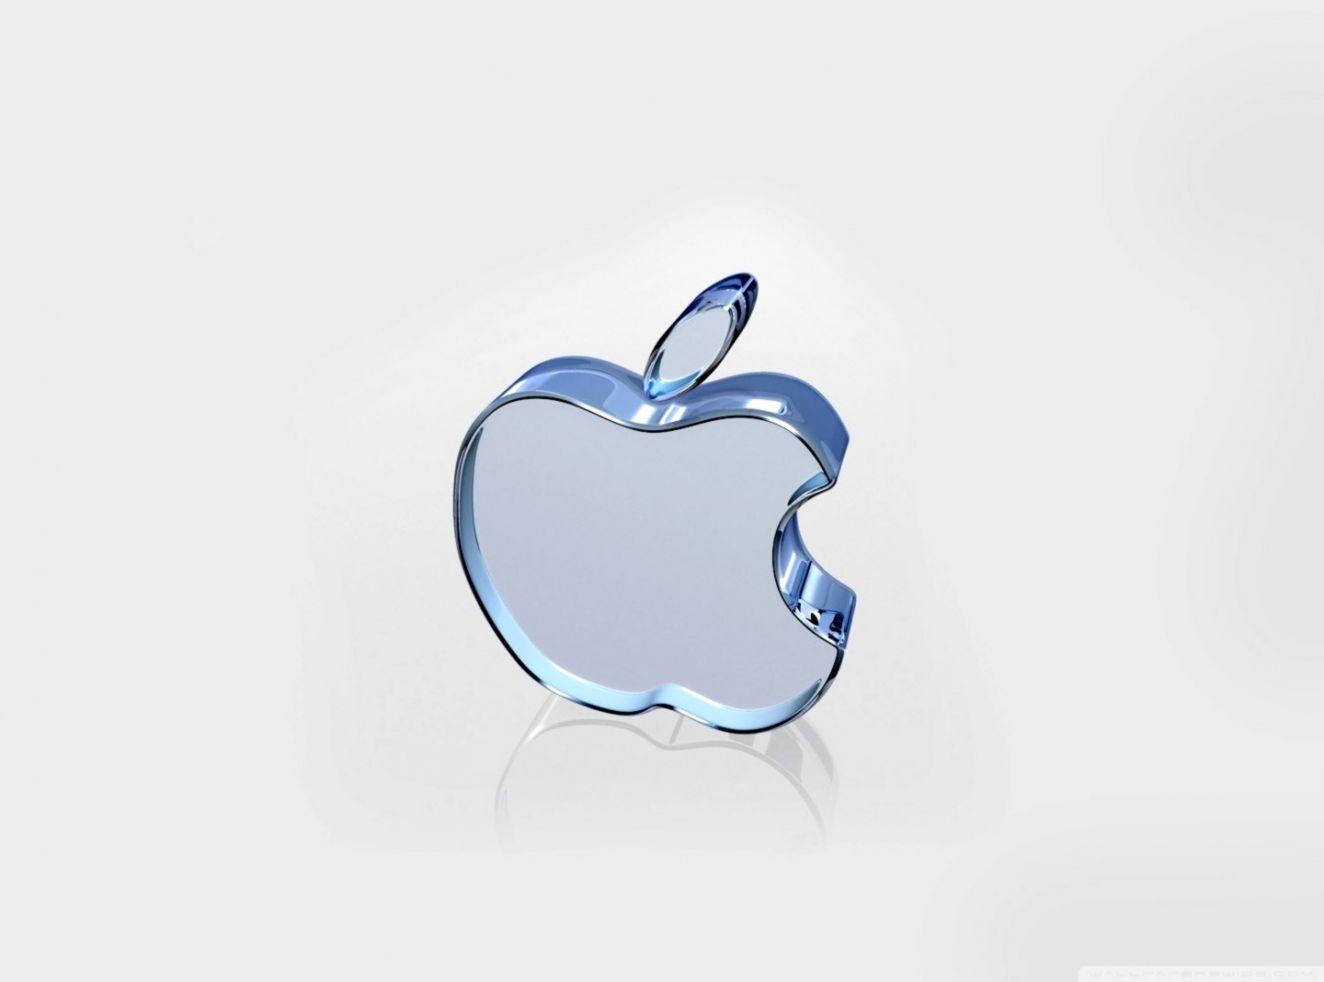 Glass Apple Logo 4k Wallpaper